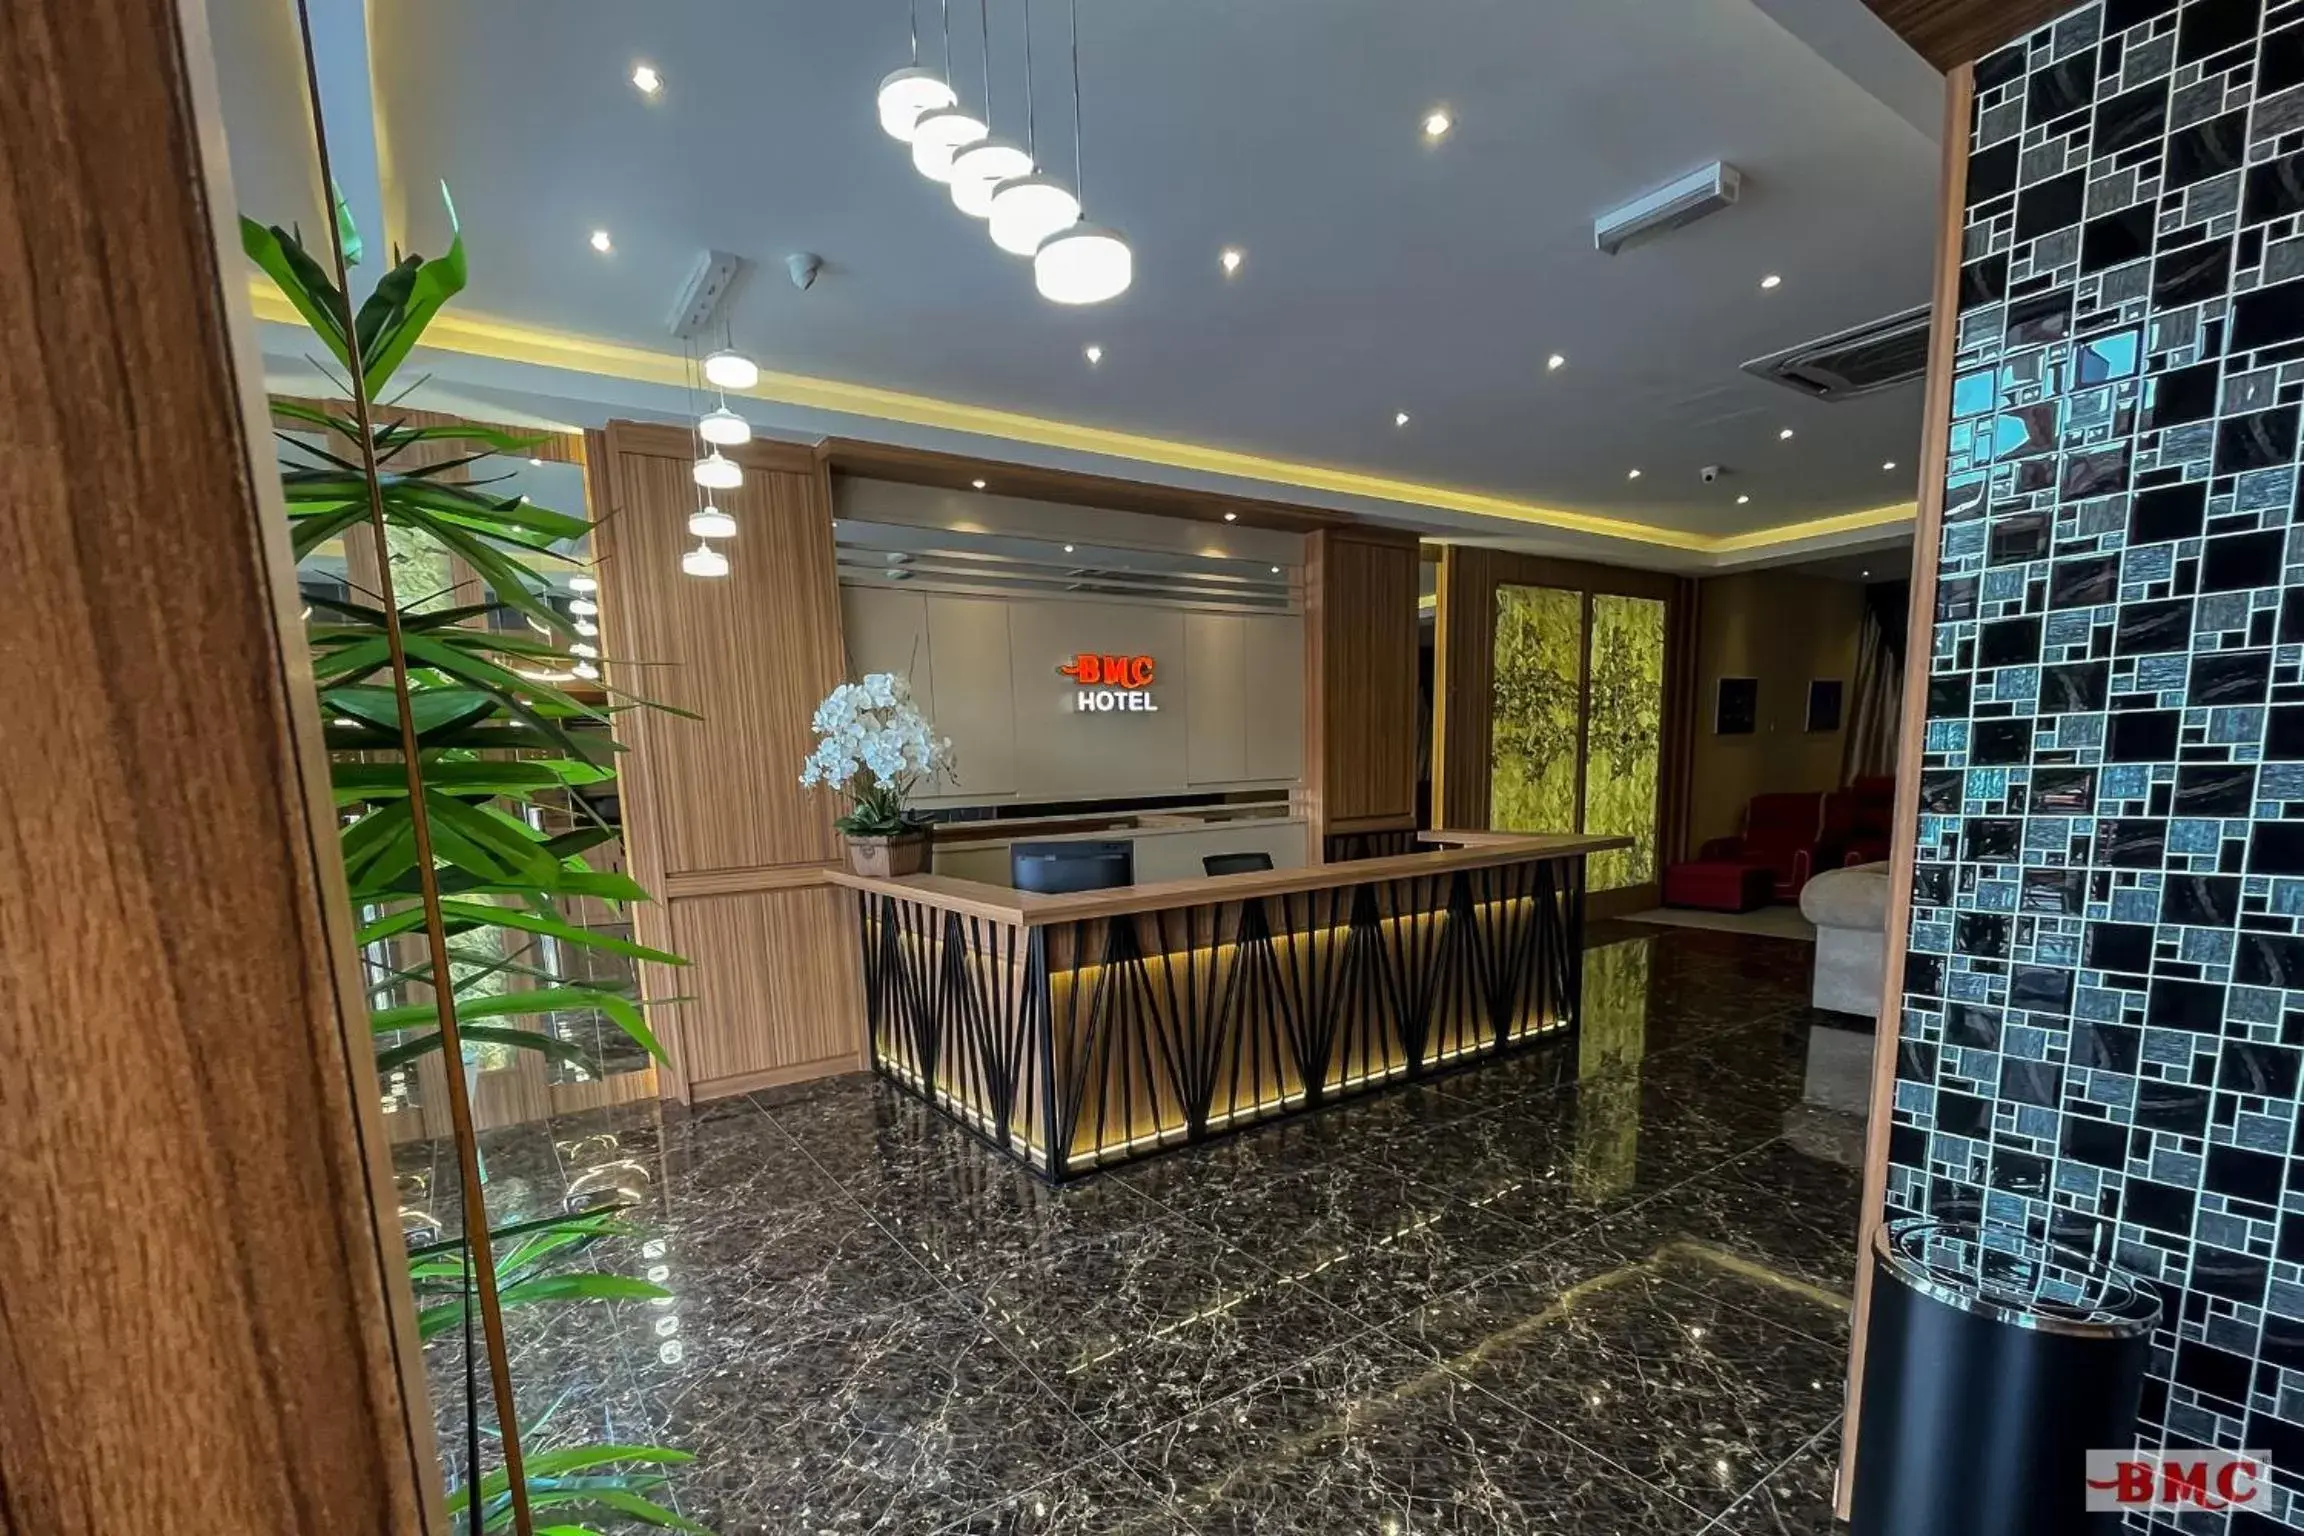 Lobby or reception, Lobby/Reception in BMC Hotel